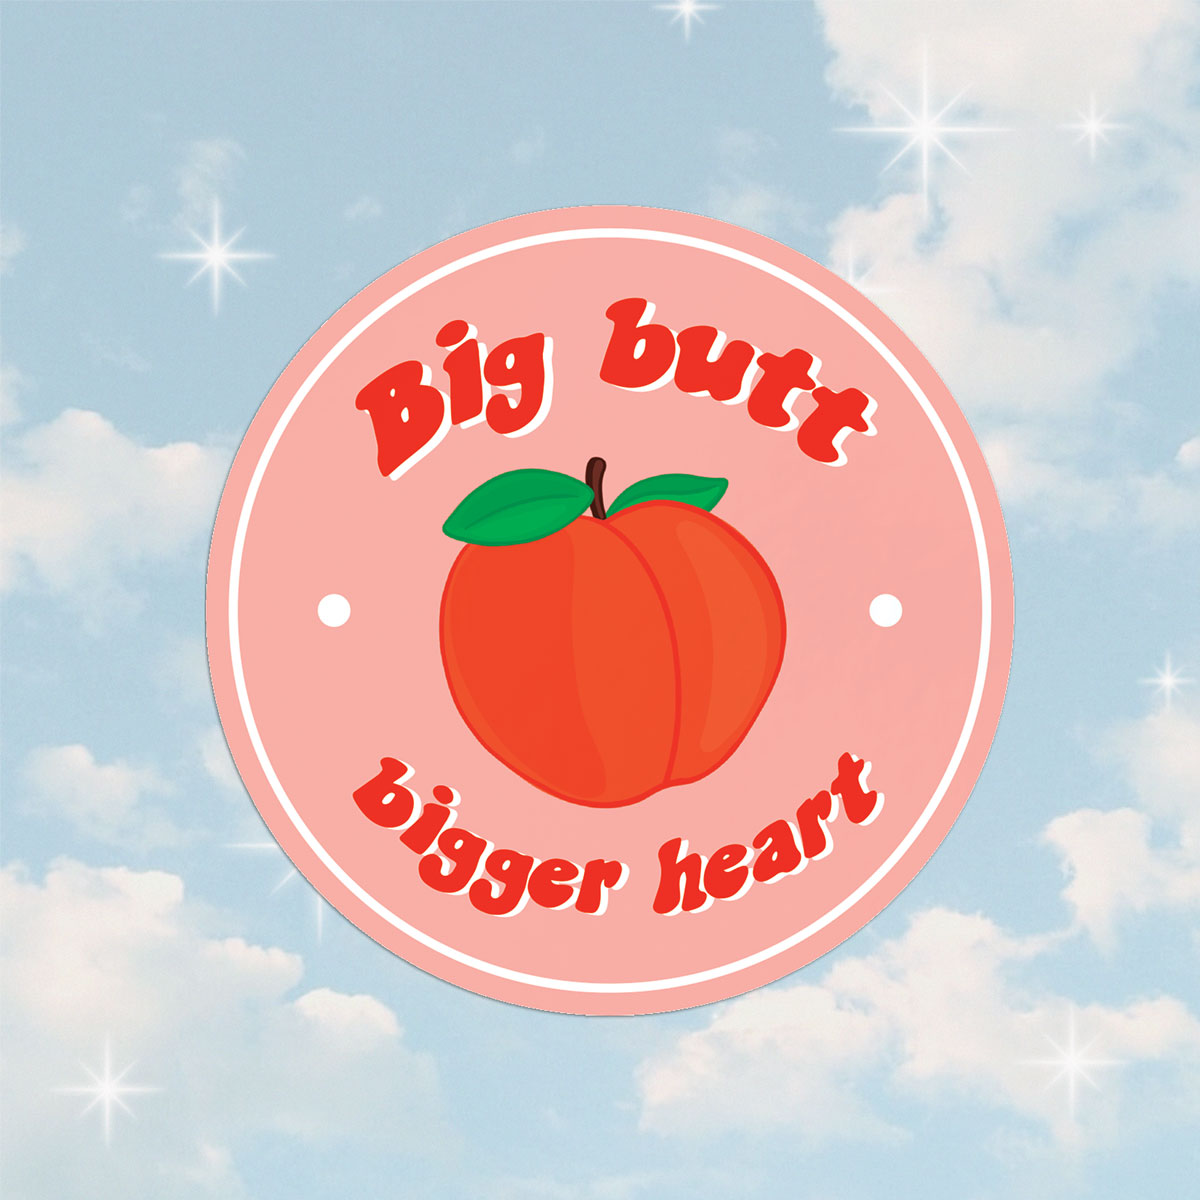 Big Butt, Bigger Heart Sticker